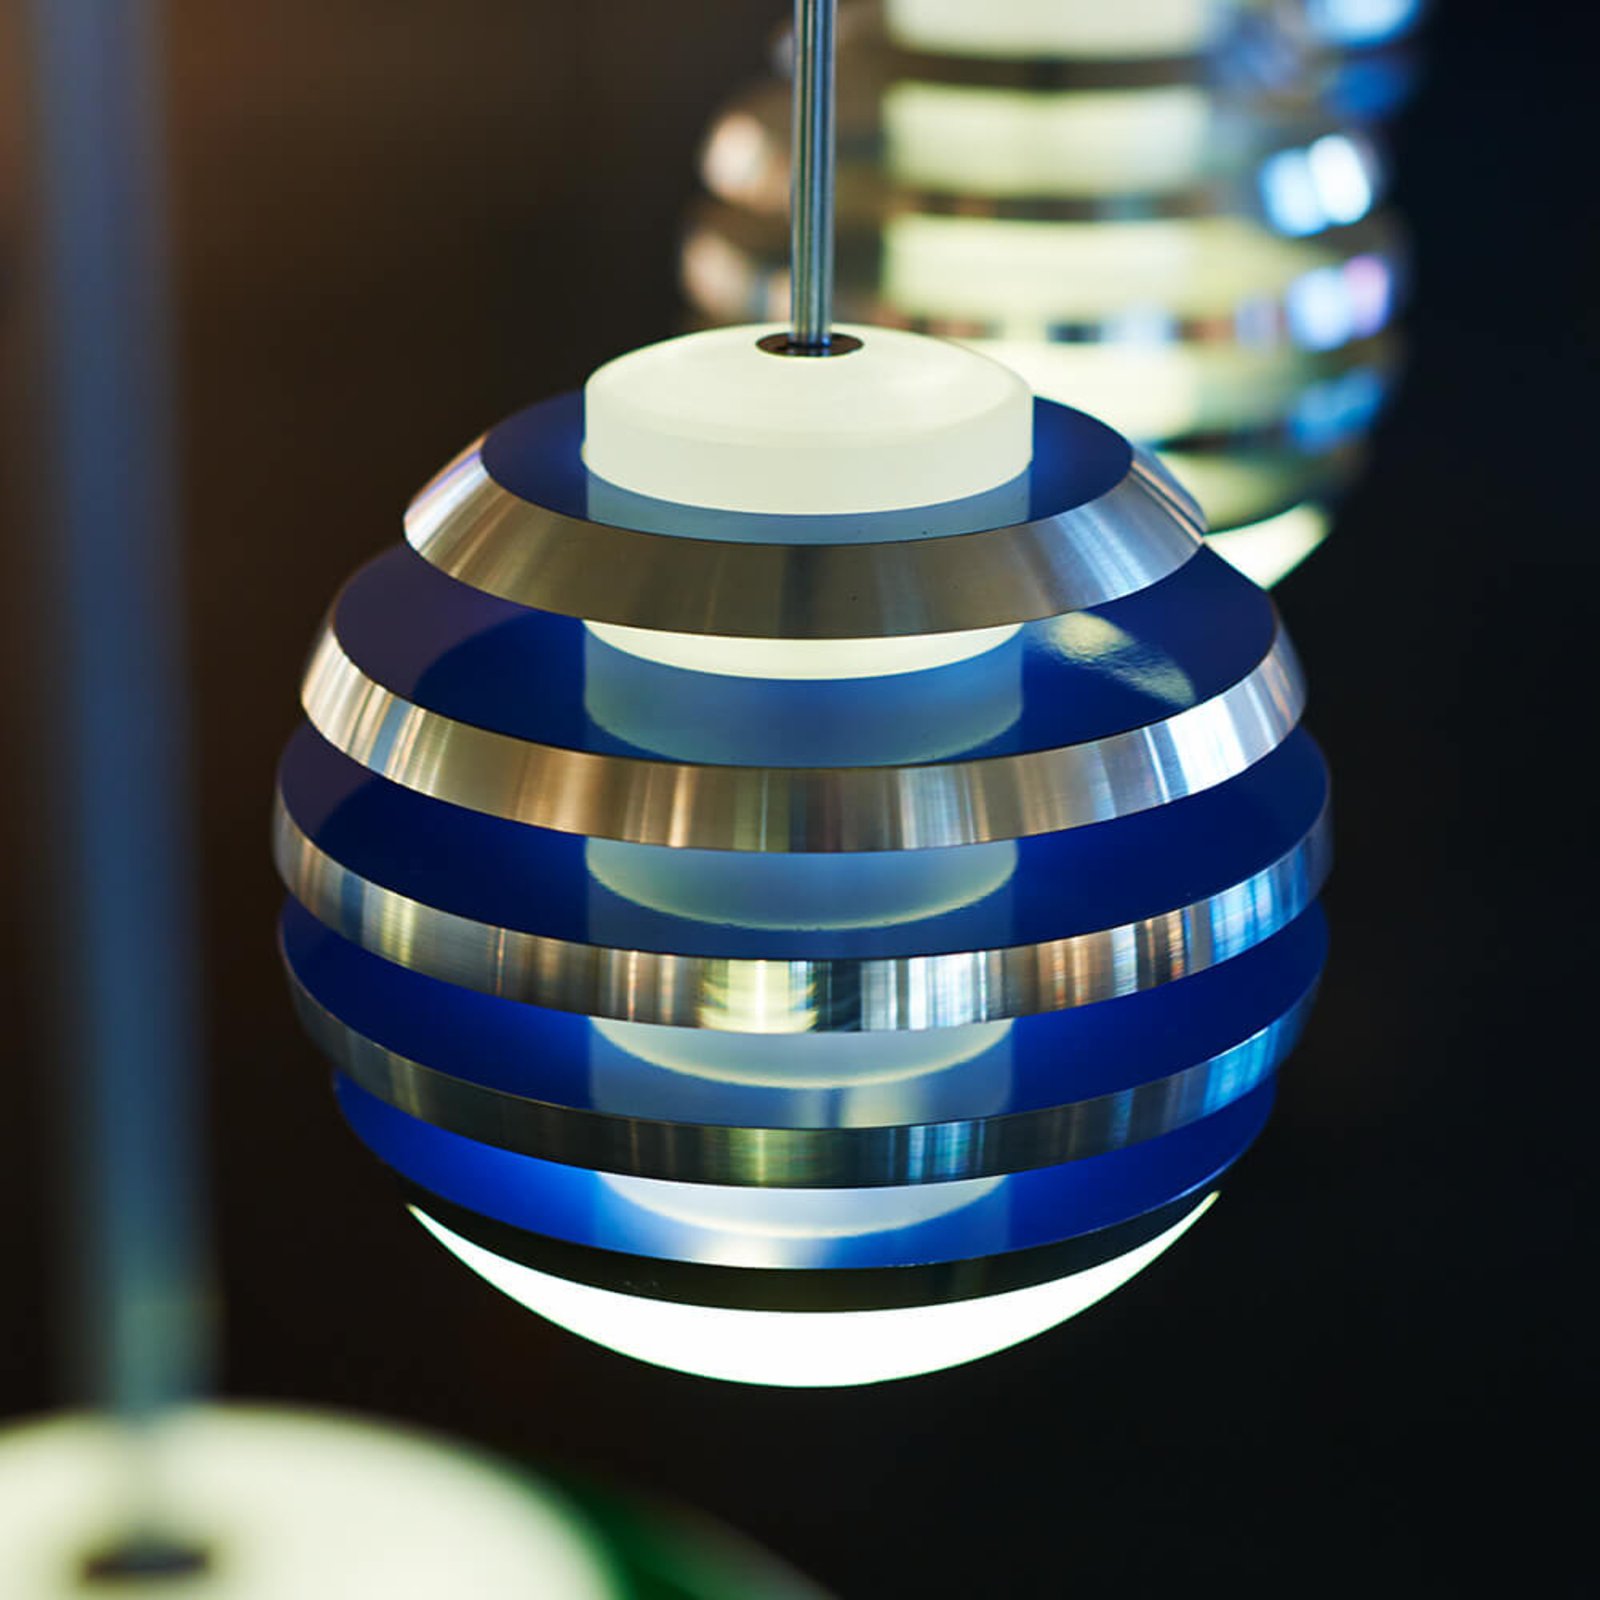 TECNOLUMEN Bulo - LED függő lámpa világoskék